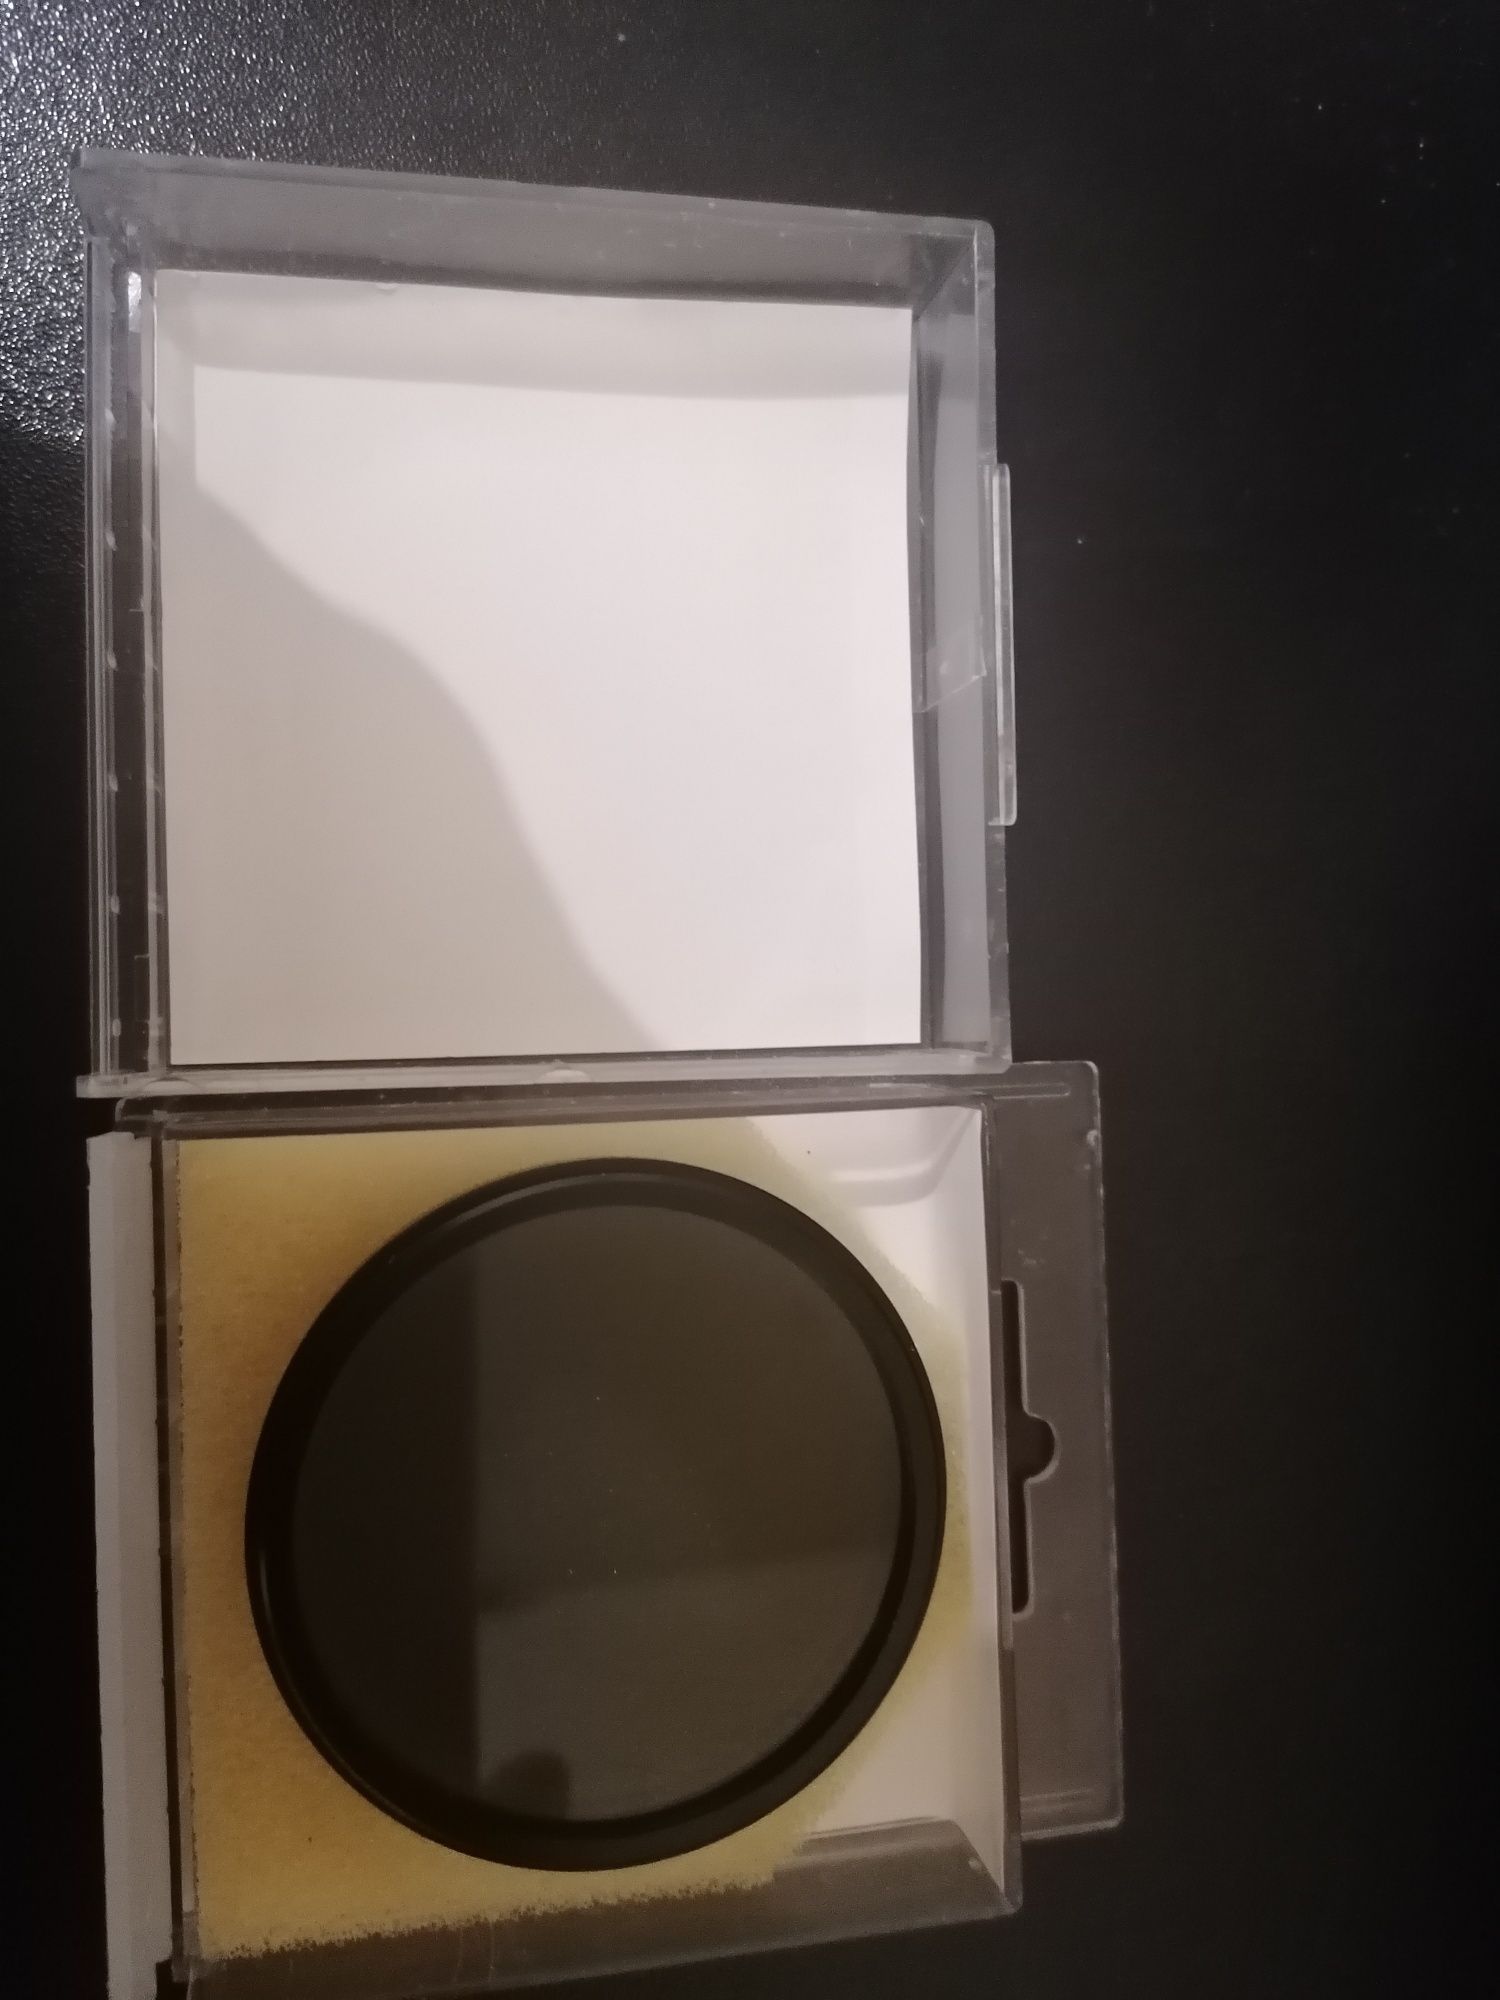 Hoya 52MM circular polarizing filter